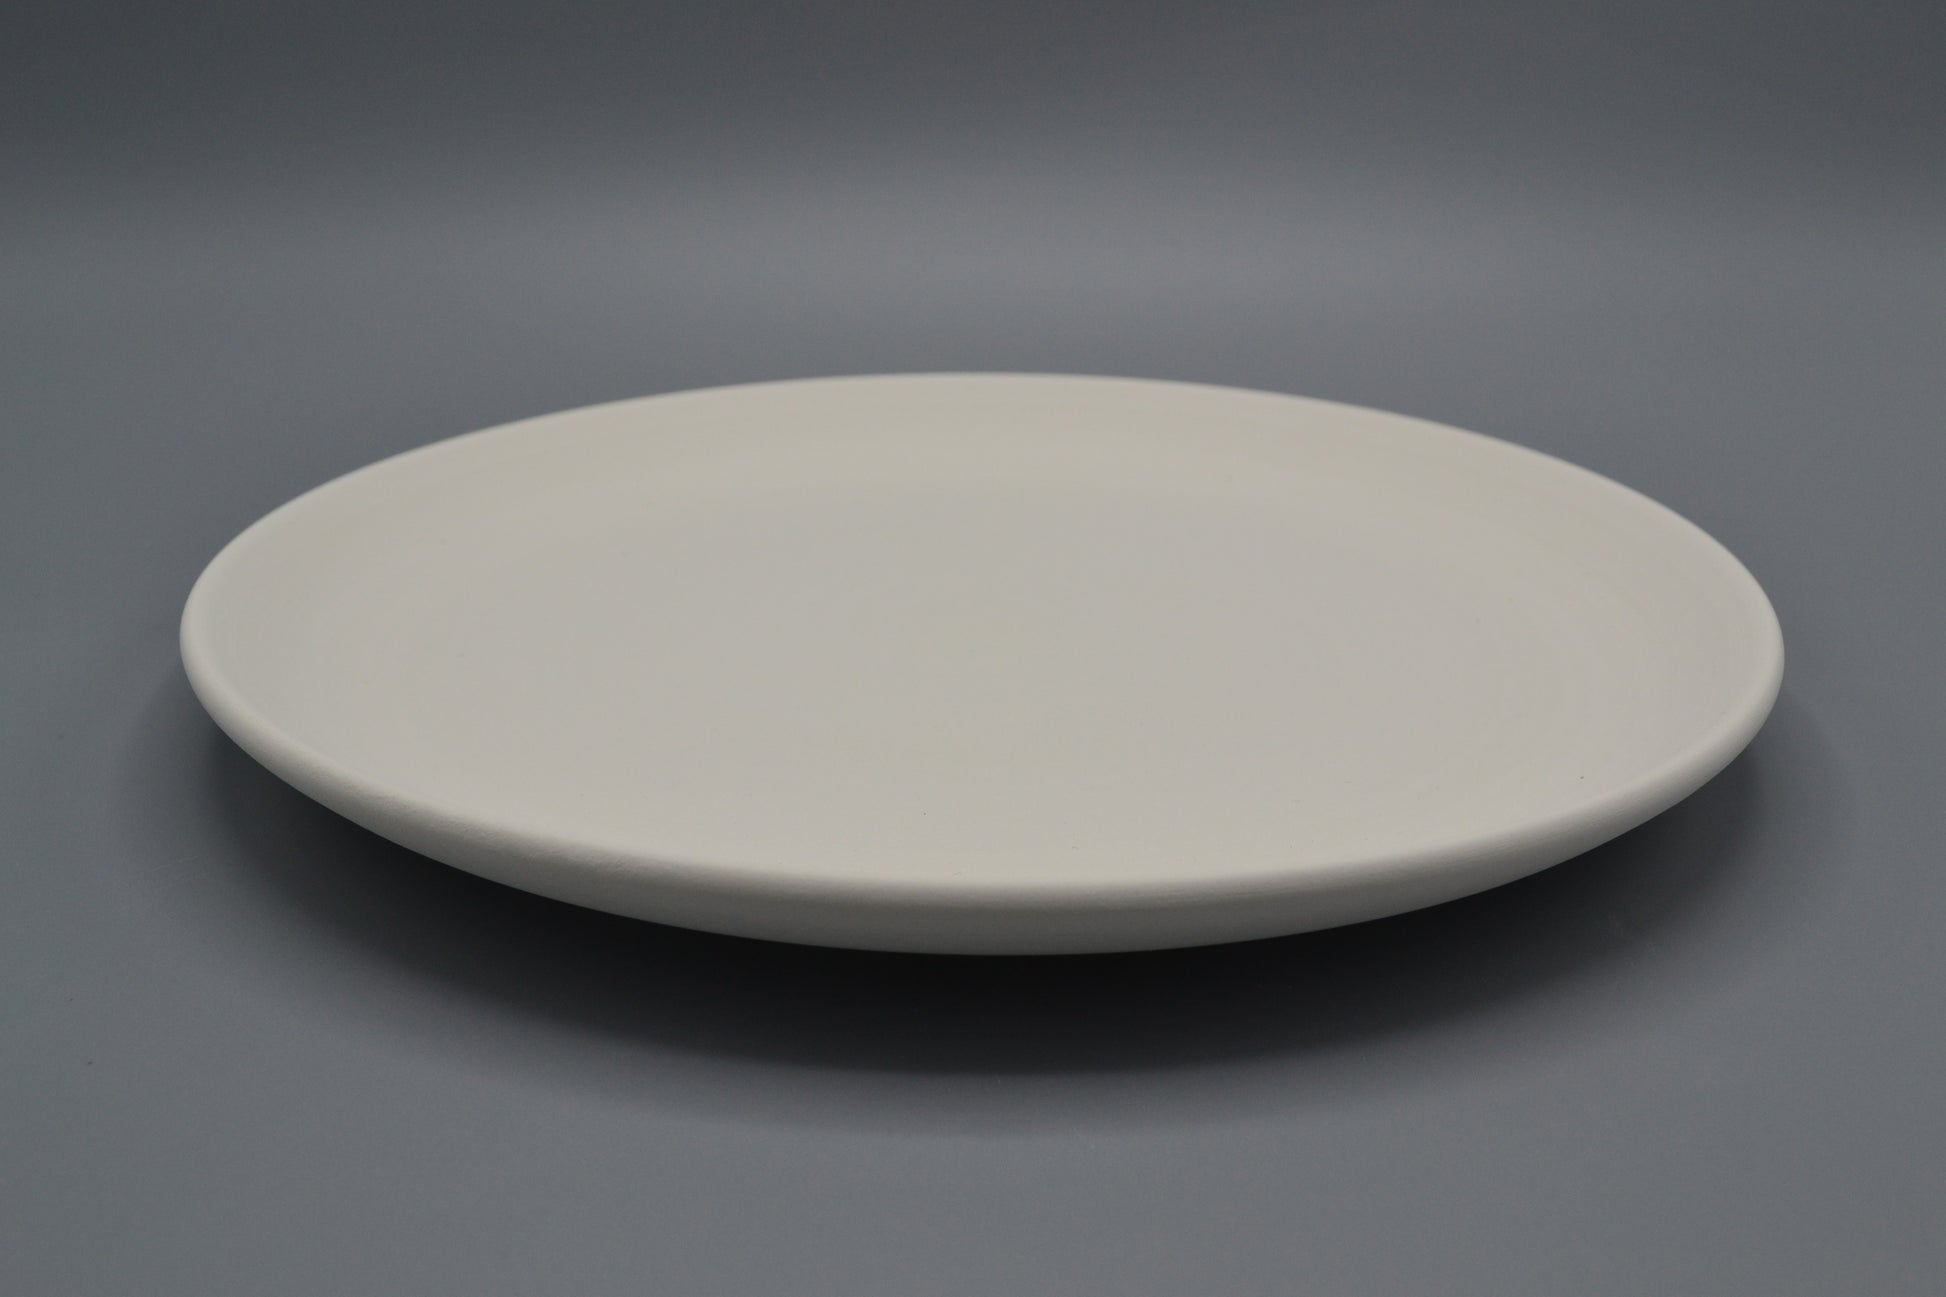 Piatto in ceramica semilavorata GREZZA da dipingere – Ceramiche Pigato